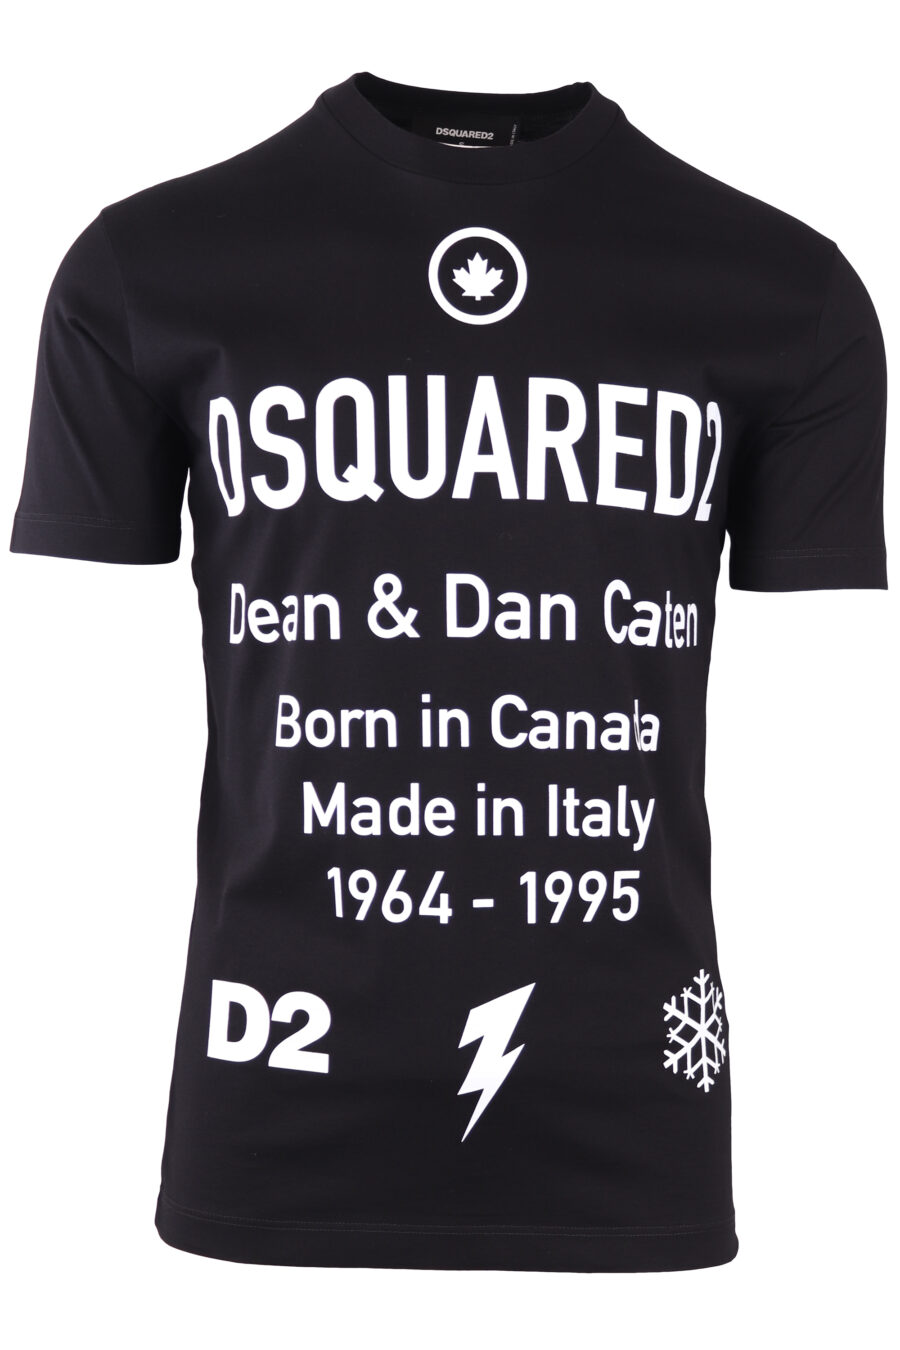 Camiseta negra con maxilogo texto "dean and dan caten" - IMG 7722